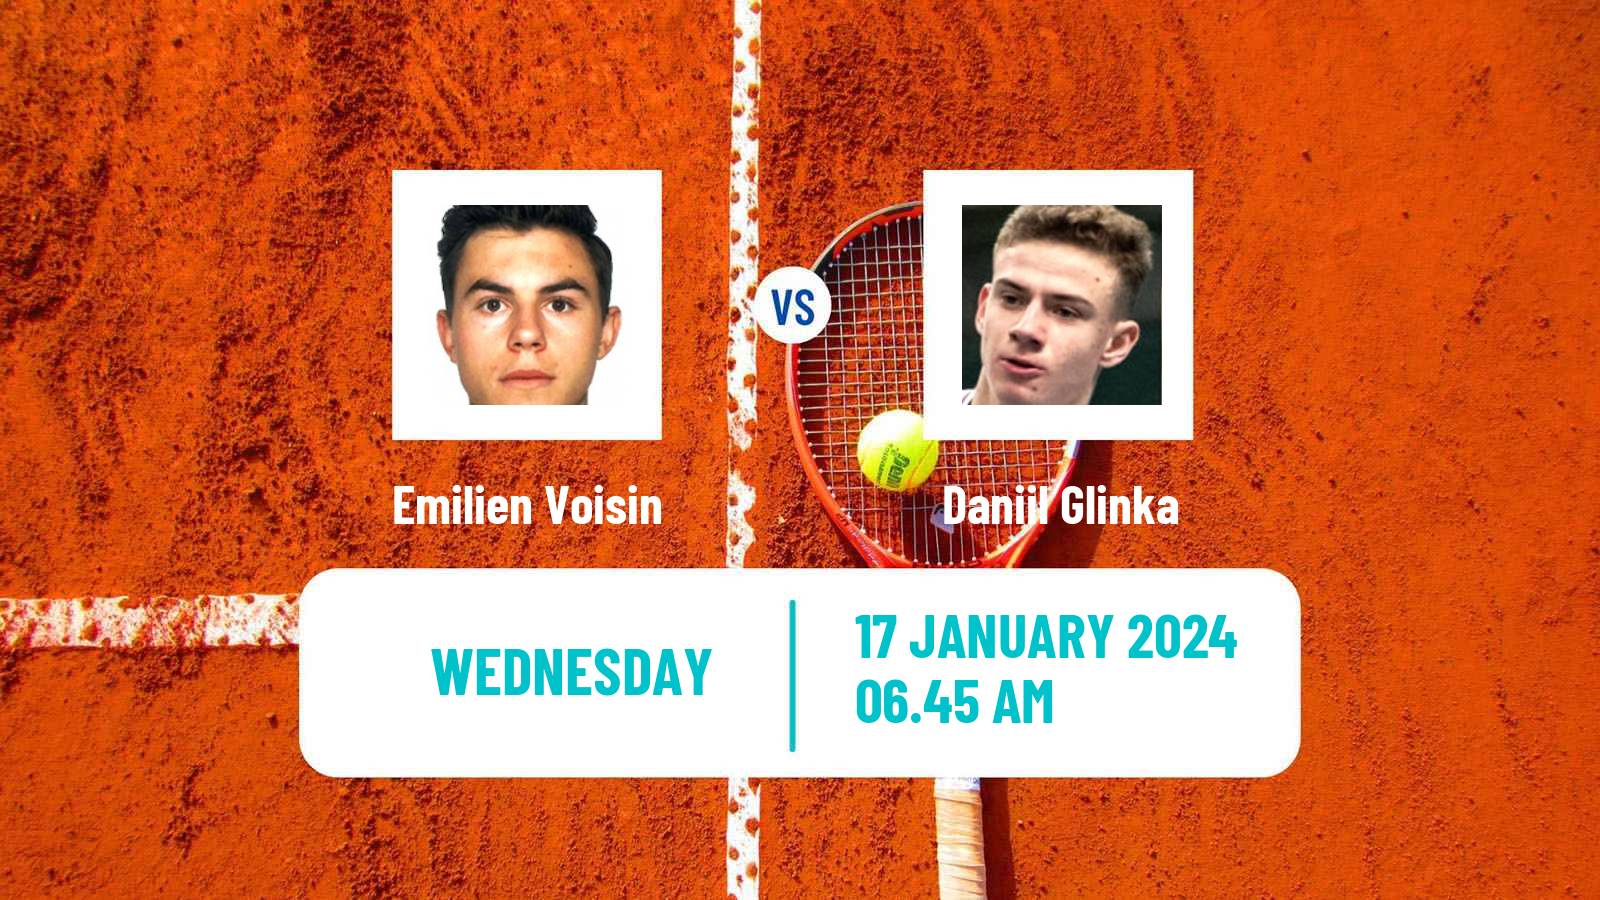 Tennis ITF M25 Sunderland Men Emilien Voisin - Daniil Glinka